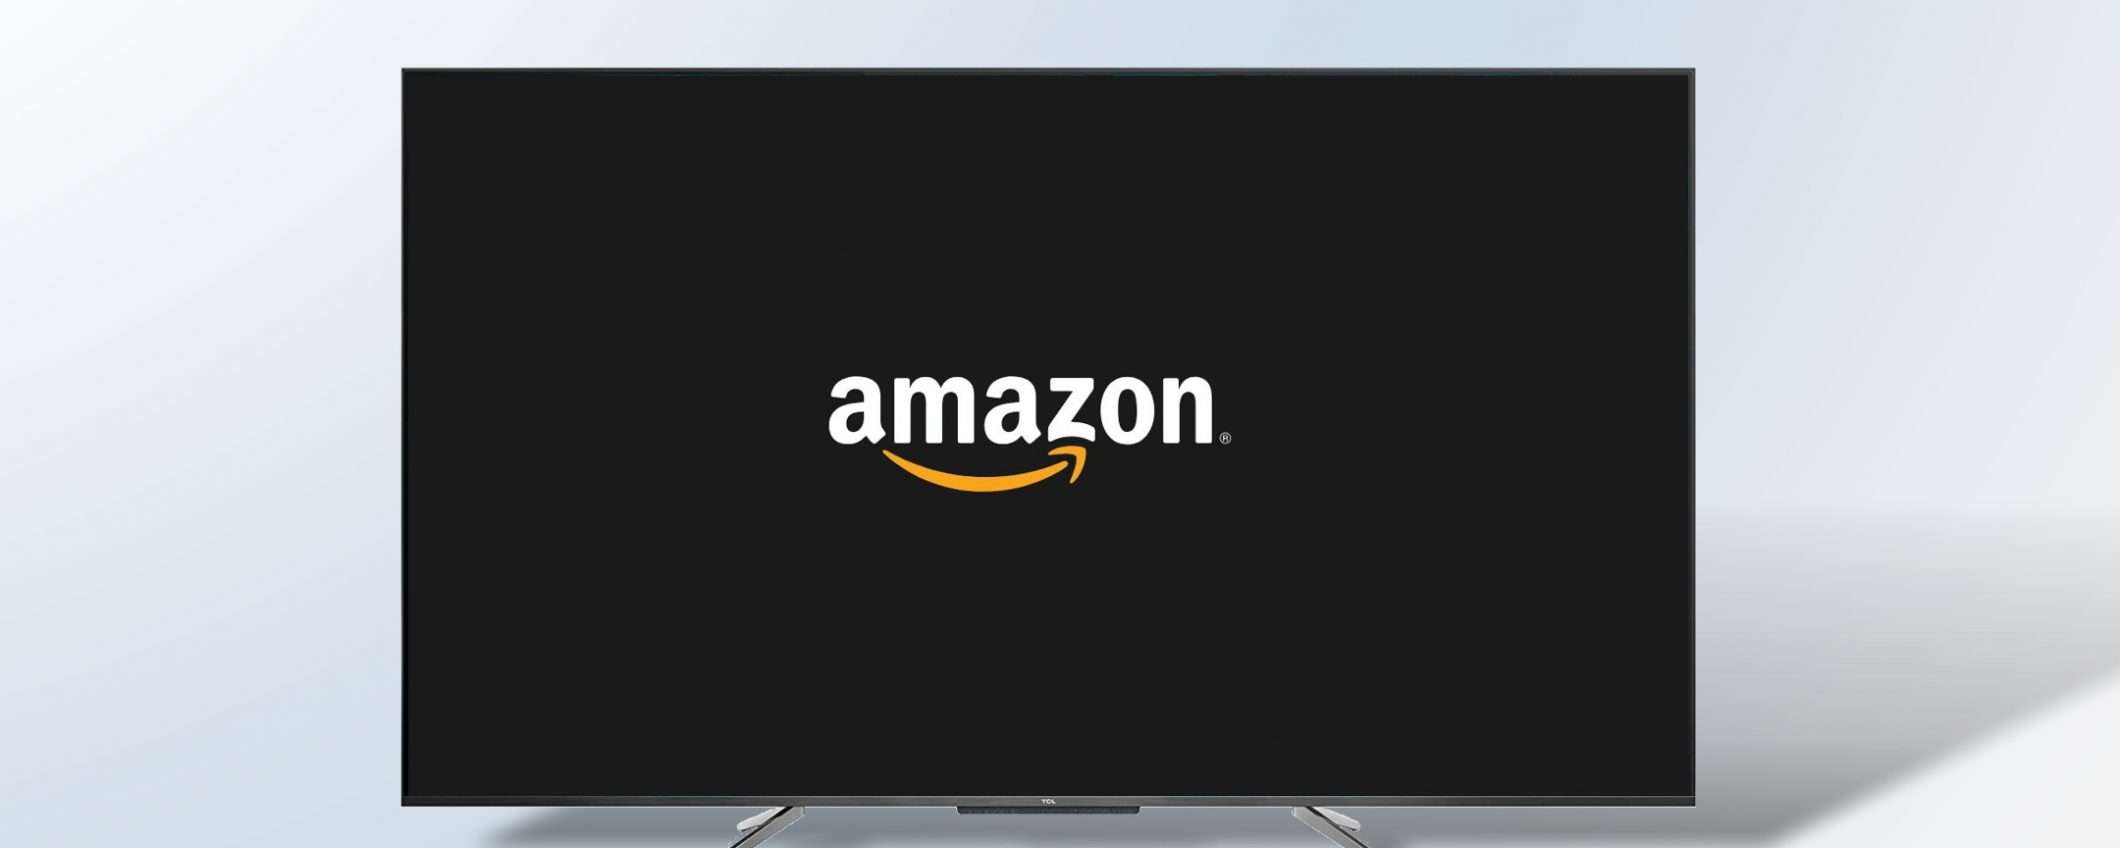 Sta per arrivare la TV di Amazon basata su Alexa